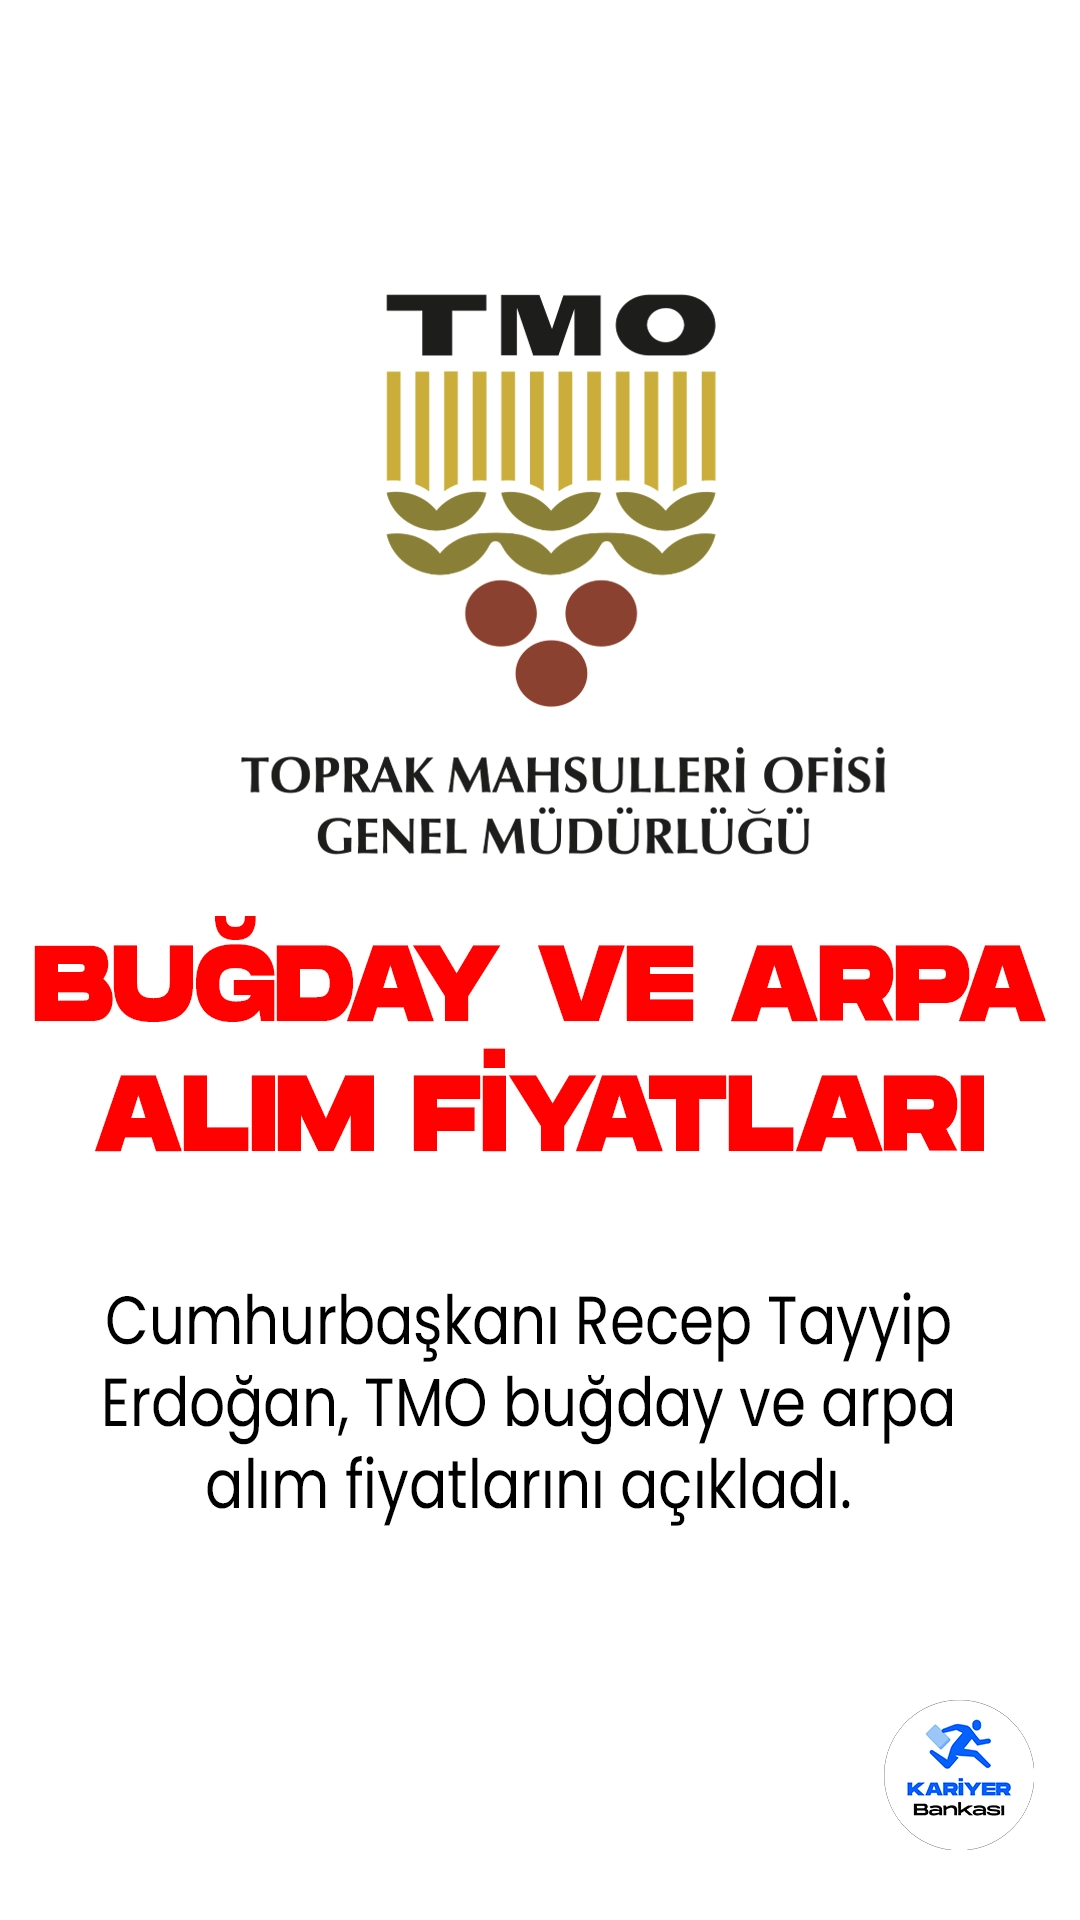 Cumhurbaşkanı Recep Tayyip Erdoğan, yeni kabinenin ilk toplantısının ardından ulusa seslendi. TMO buğday ve arpa alım fiyatları da açıklandı.